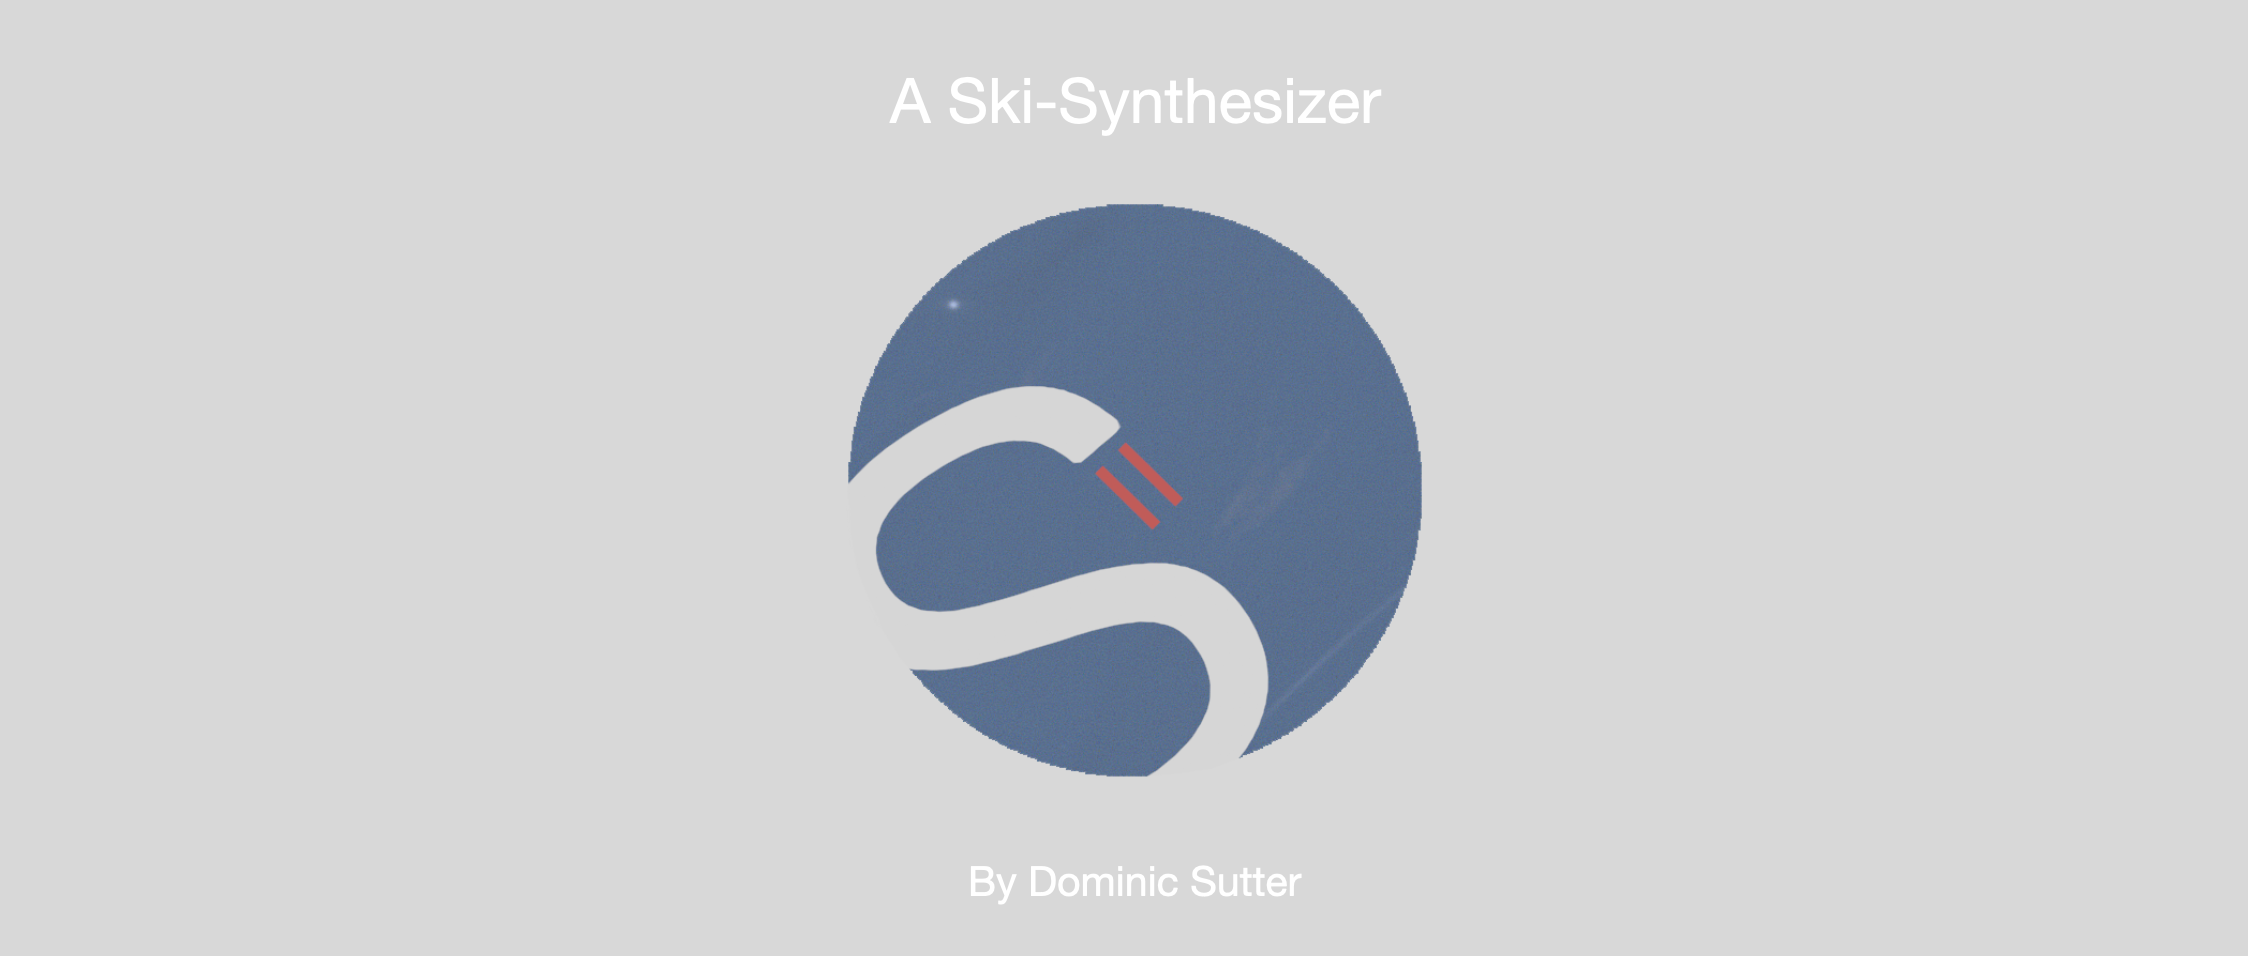 S – a Ski-Synthesizer